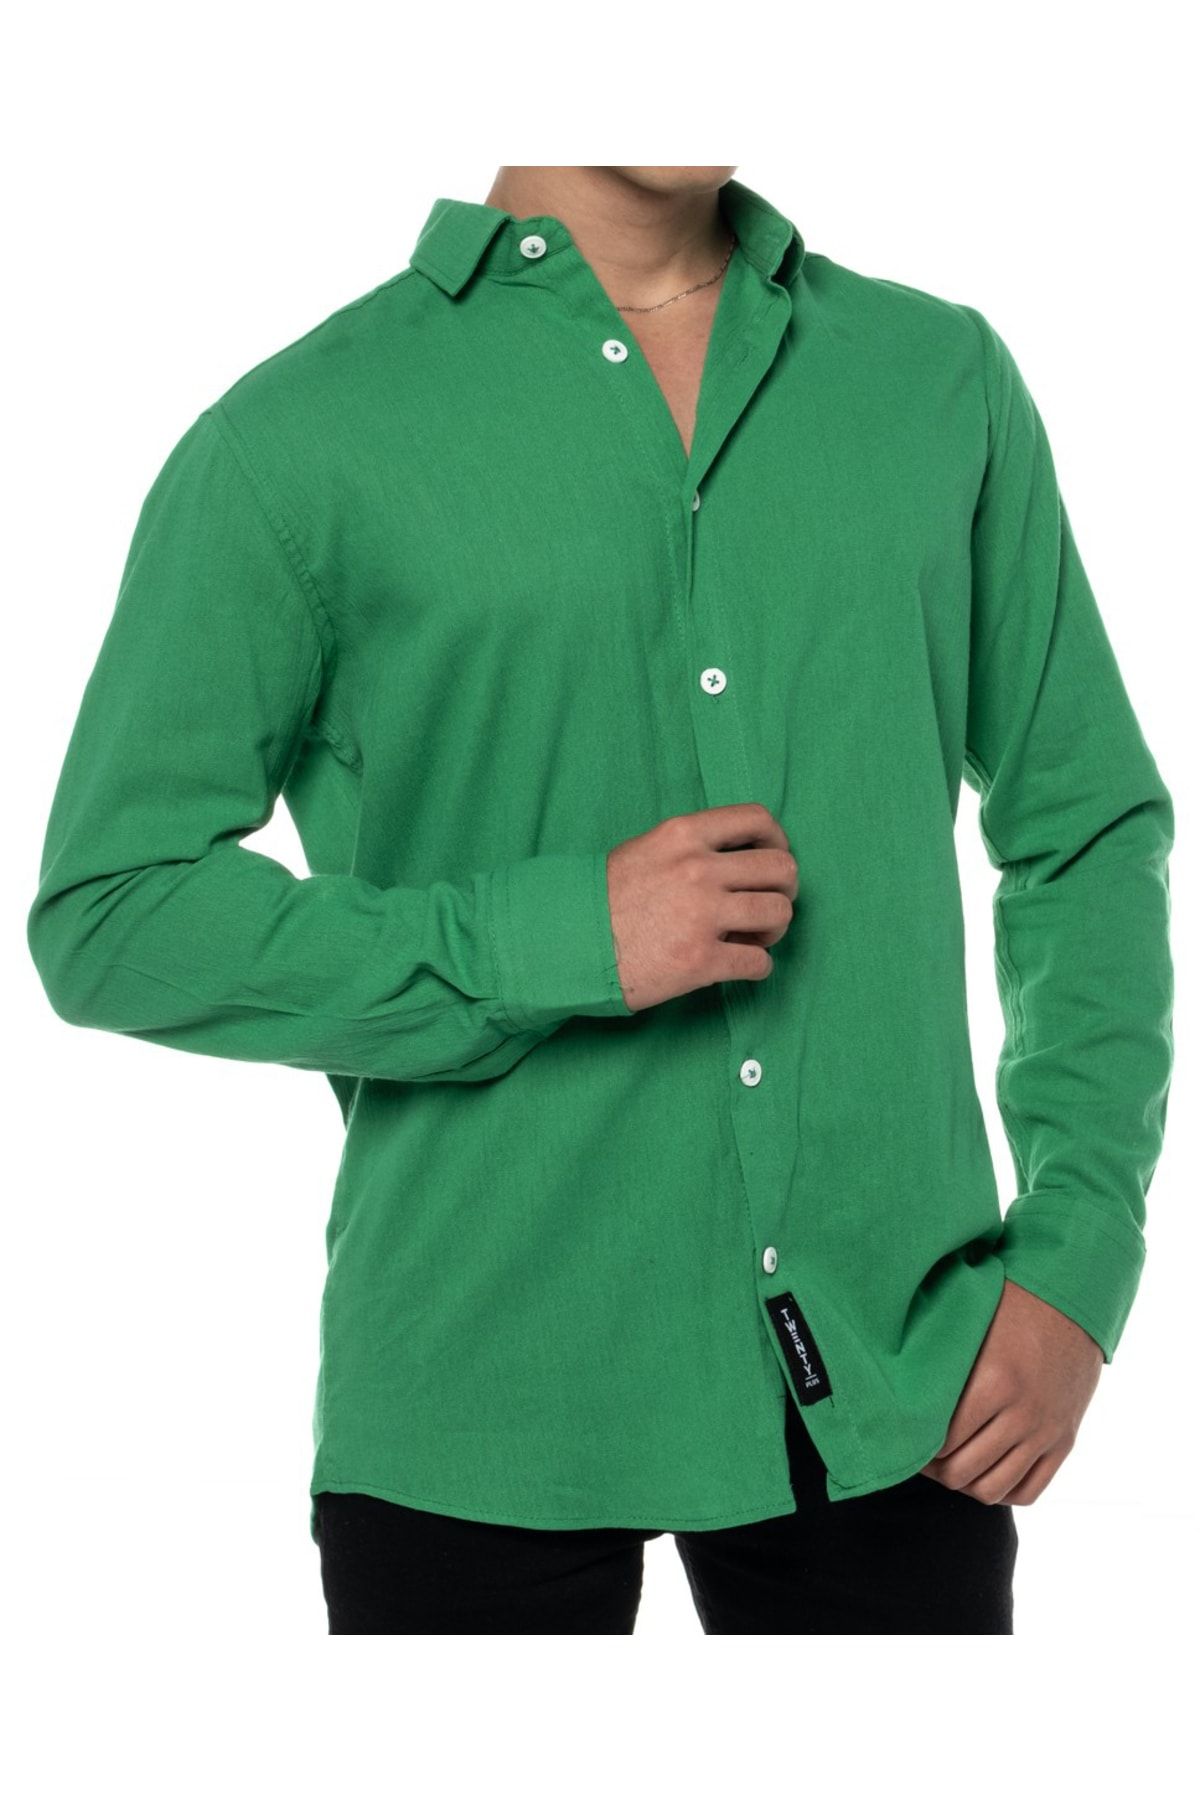 SOPRON outdoors Erkek Keten Yeşil Regular Fit Gömlek Yaka Uzun Kollu Gömlek